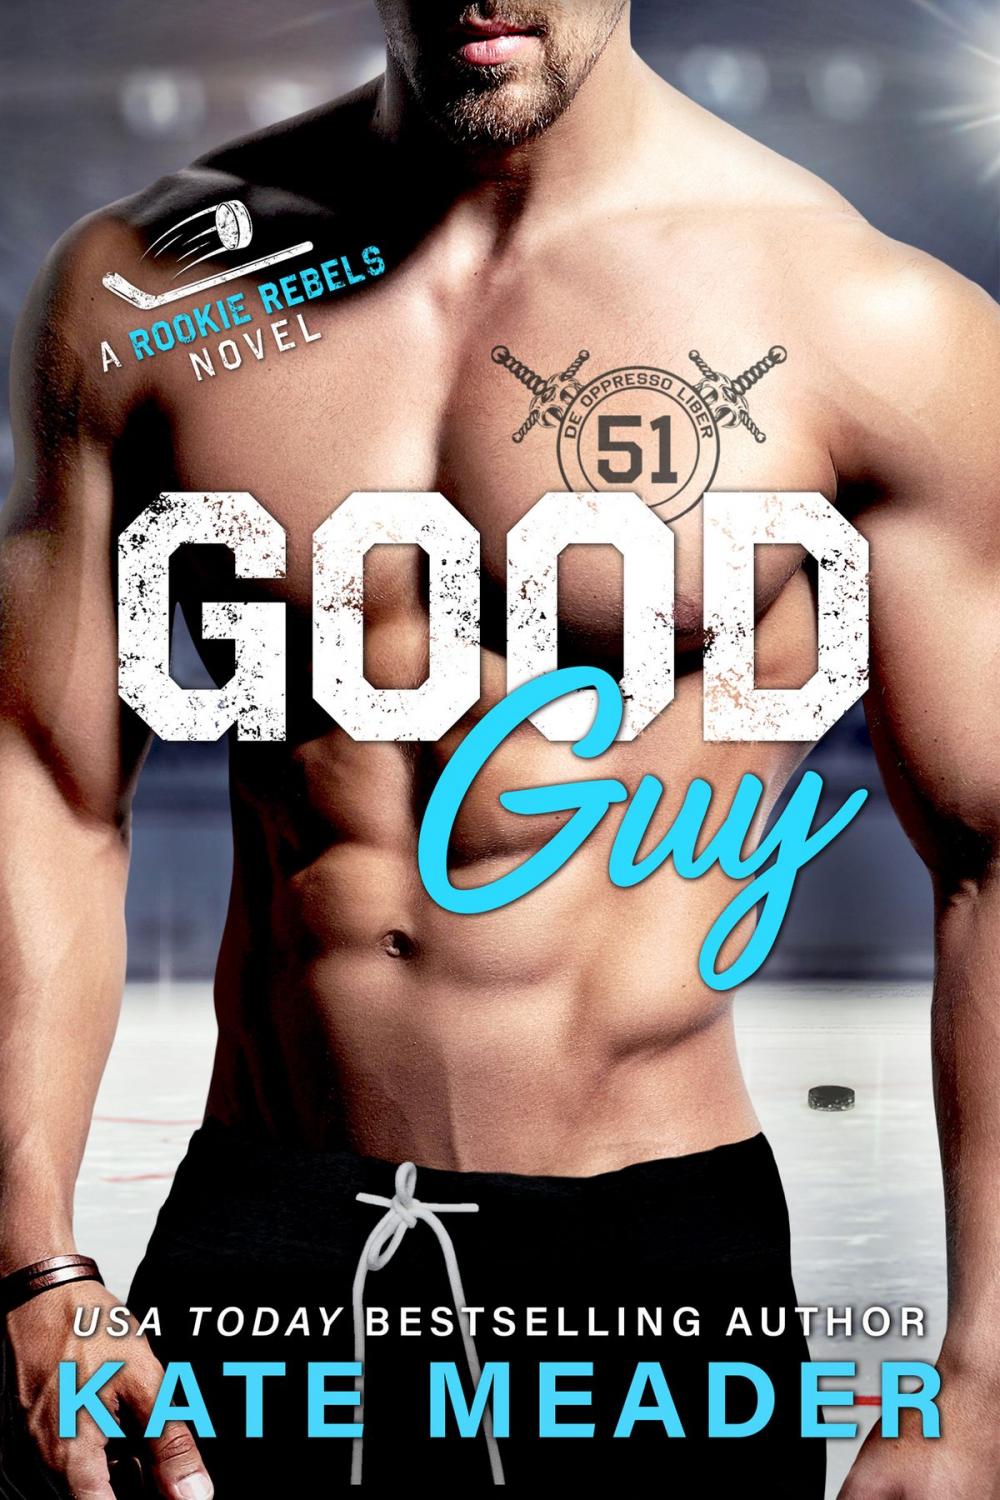 Big bigCover of Good Guy (A Rookie Rebels Novel)